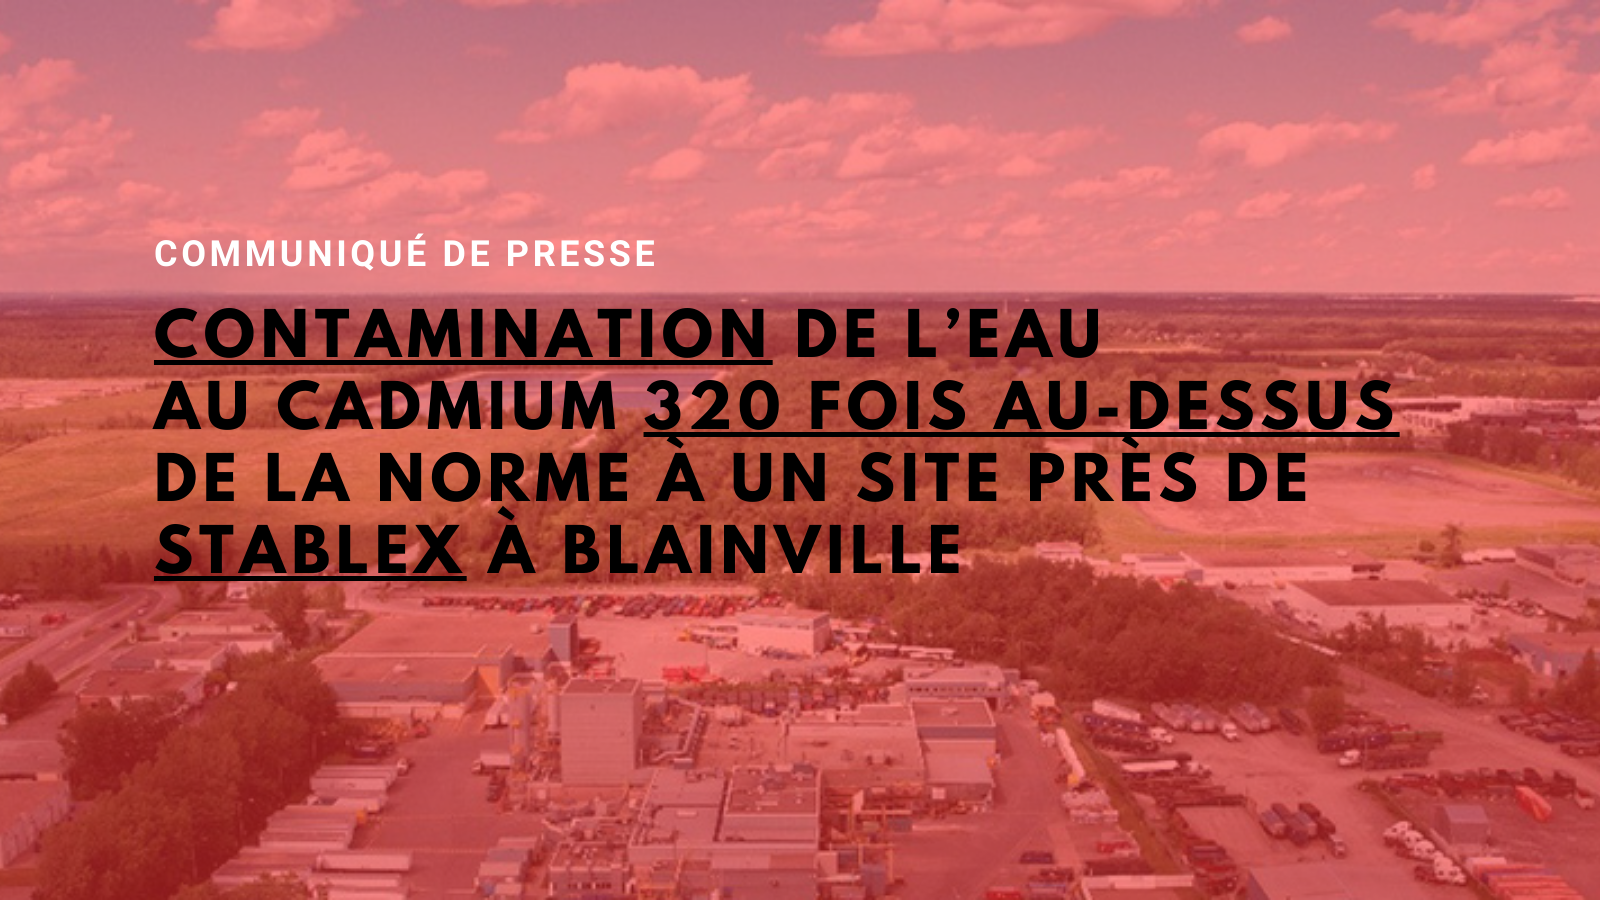 communique_contamination_blainville-autour-de-stablex